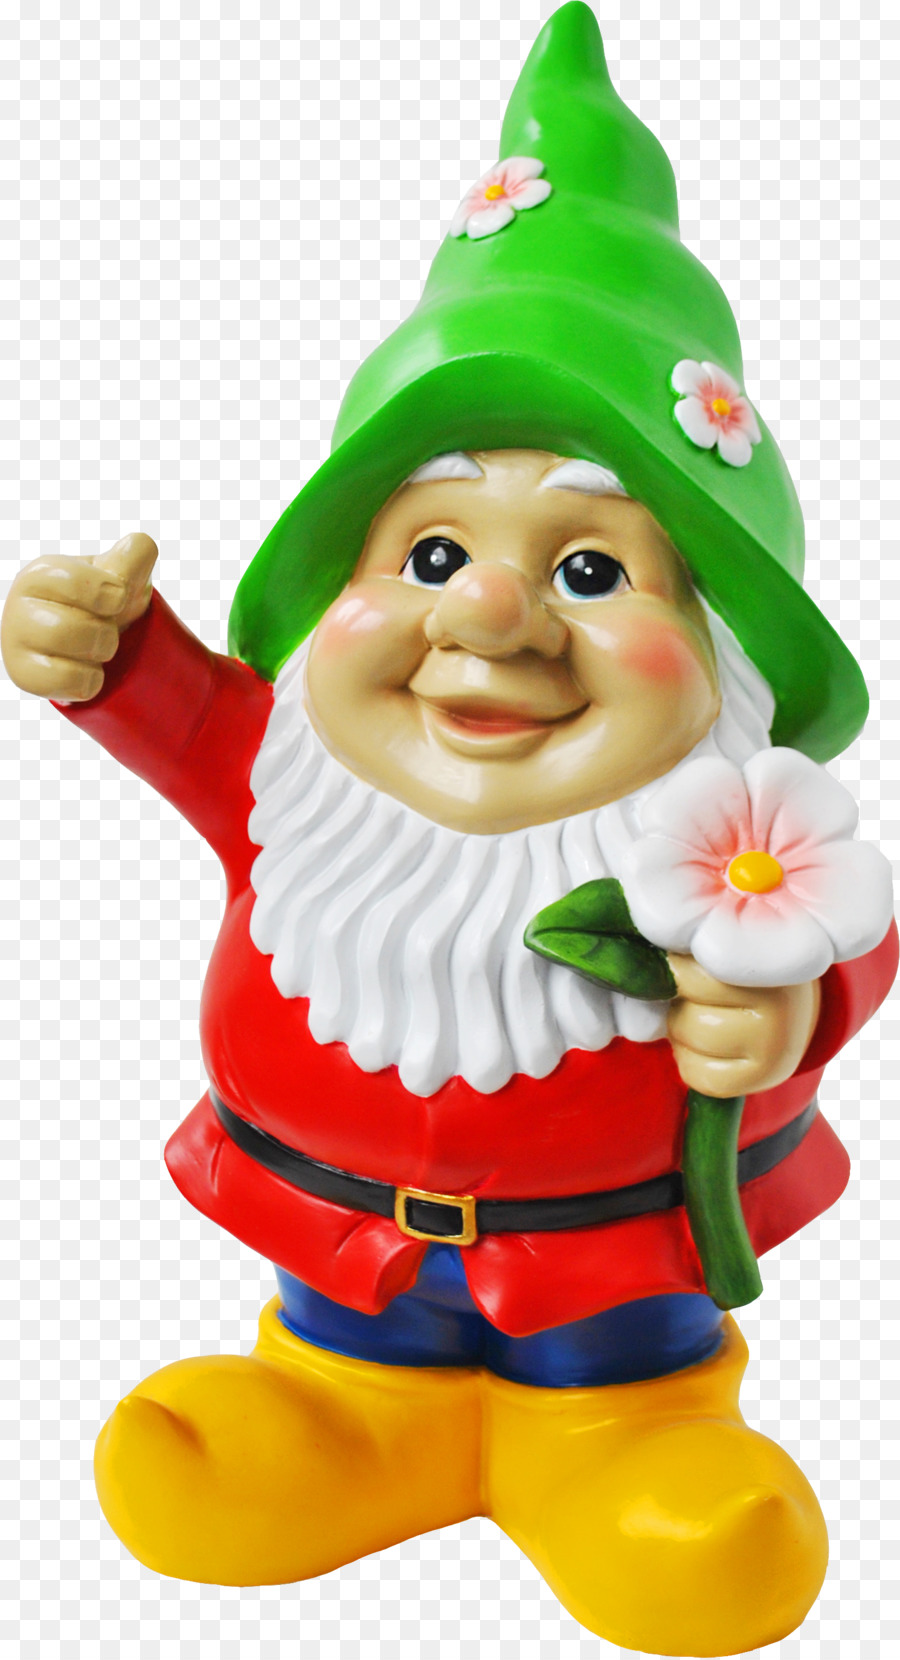 Santa Claus gnome Vườn Lùn - Thực Thể Chơi Lùn